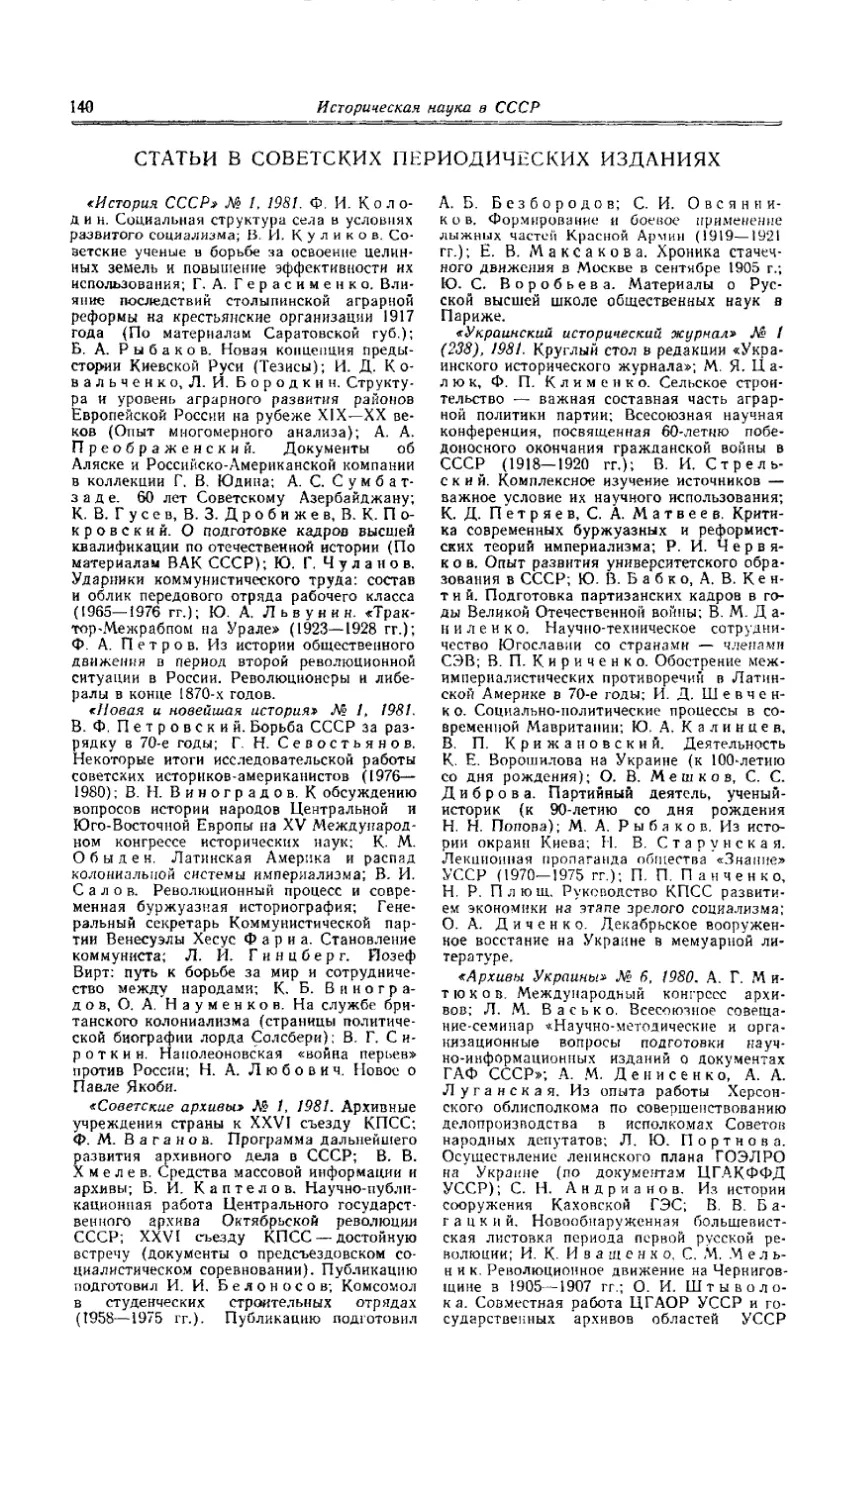 Статьи в советских периодических изданиях